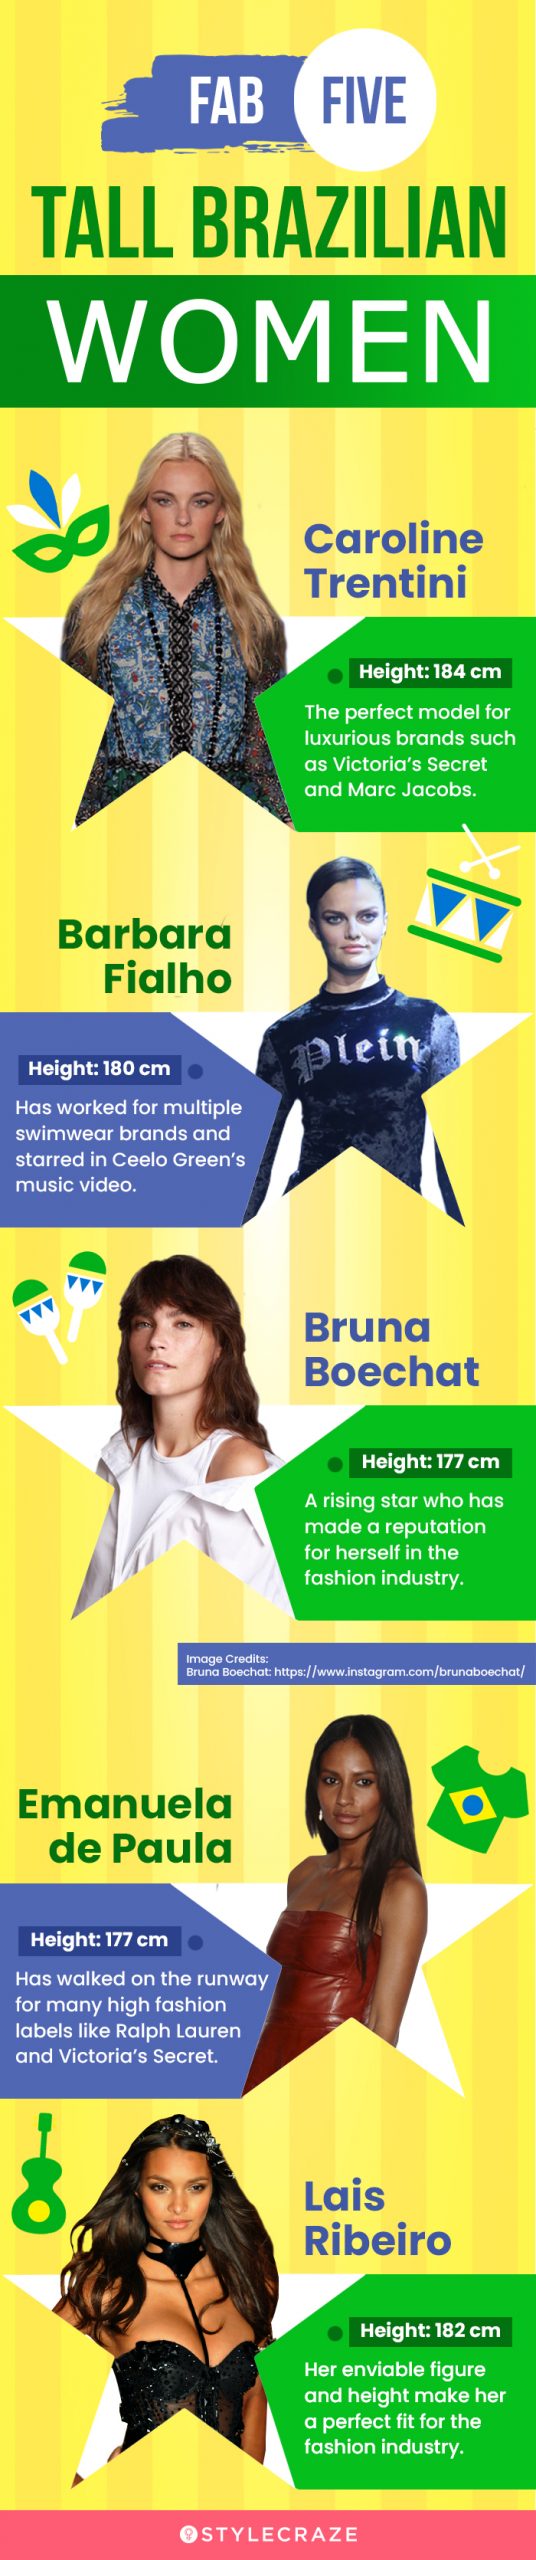 fab five tall brazilian women (infographic)